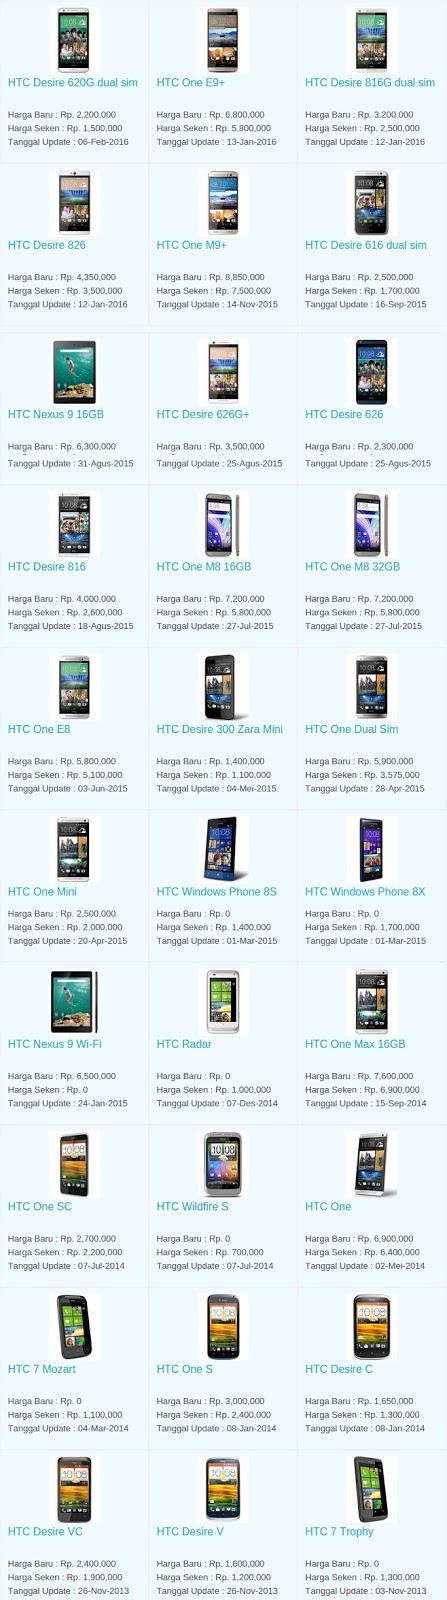 Daftar Harga Terbaru Hp HTC Maret 2016